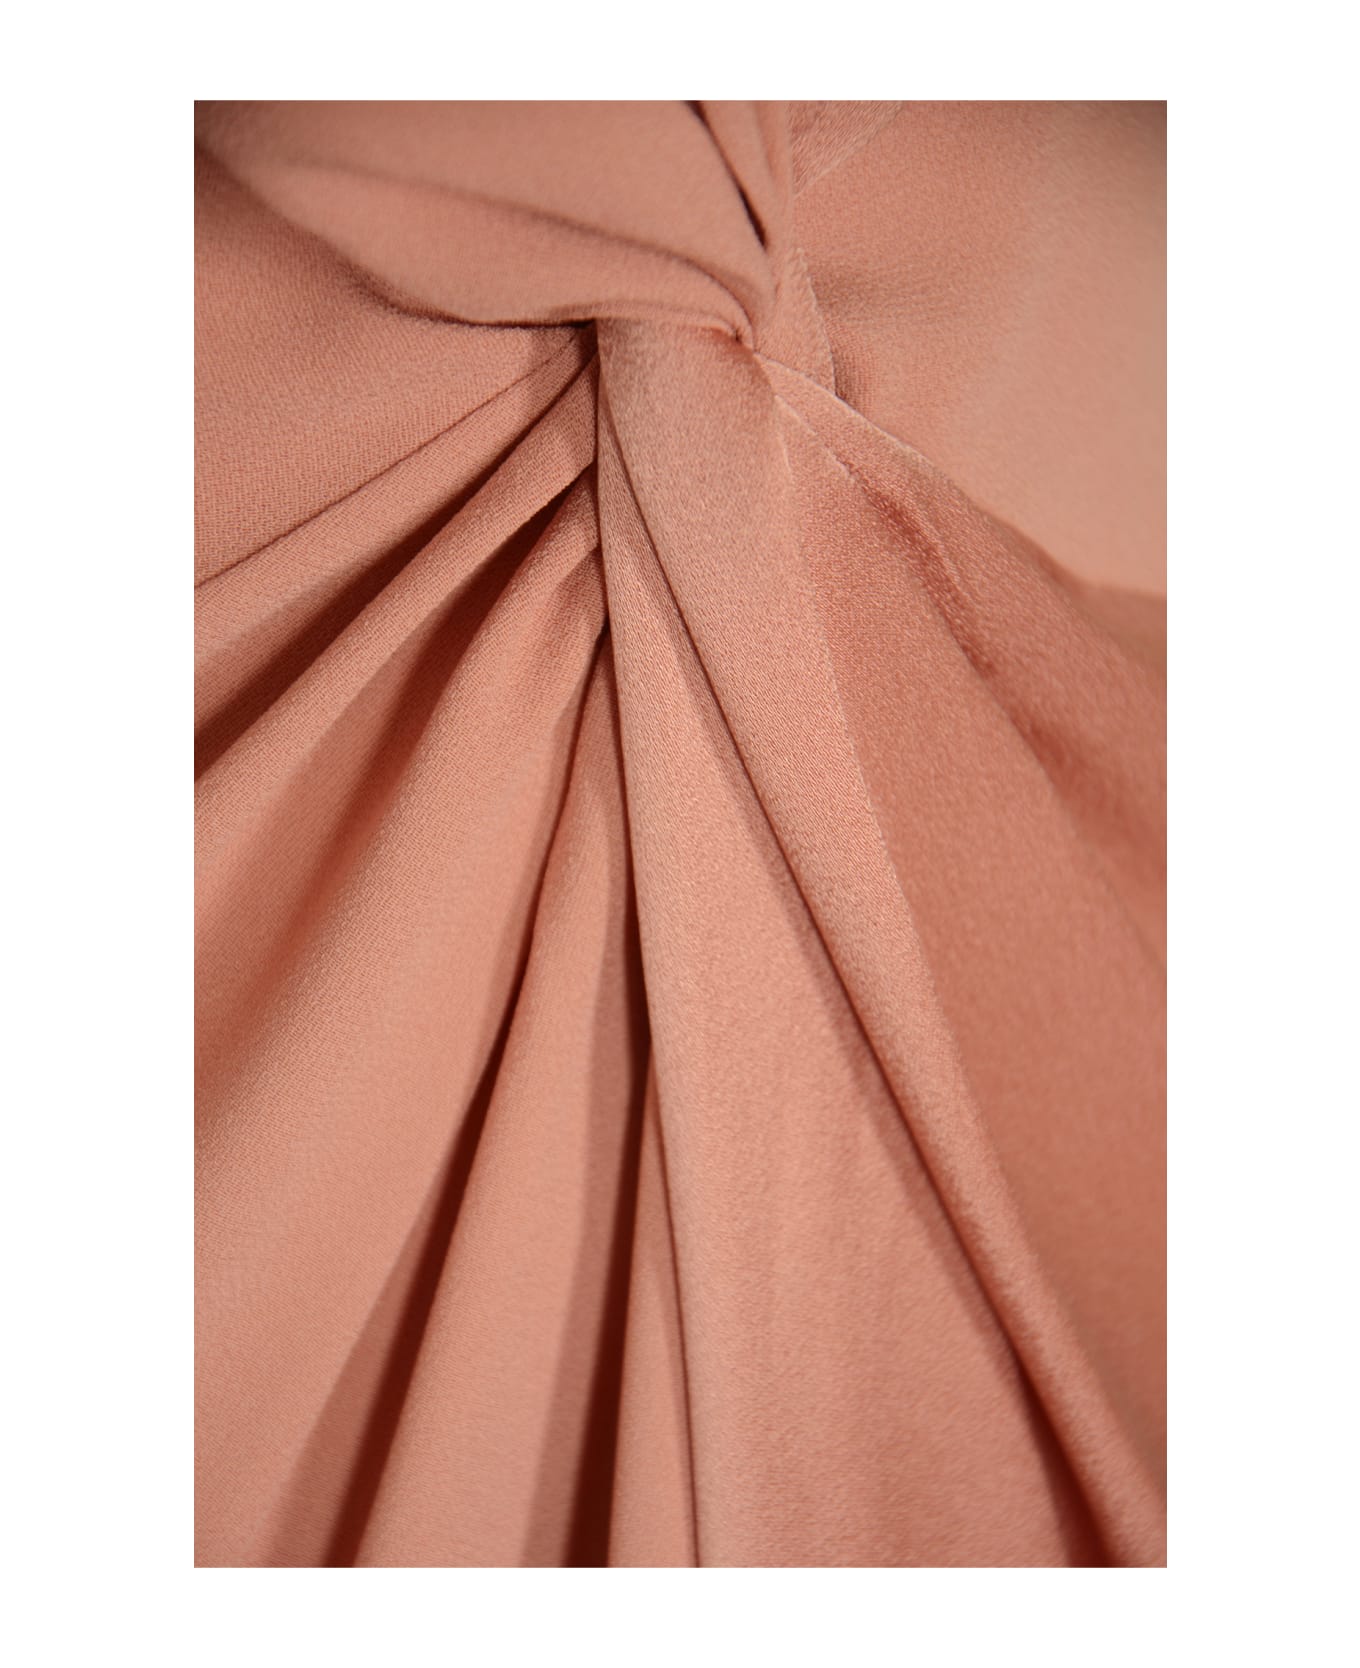 Max Mara Pilard Dress - Pink